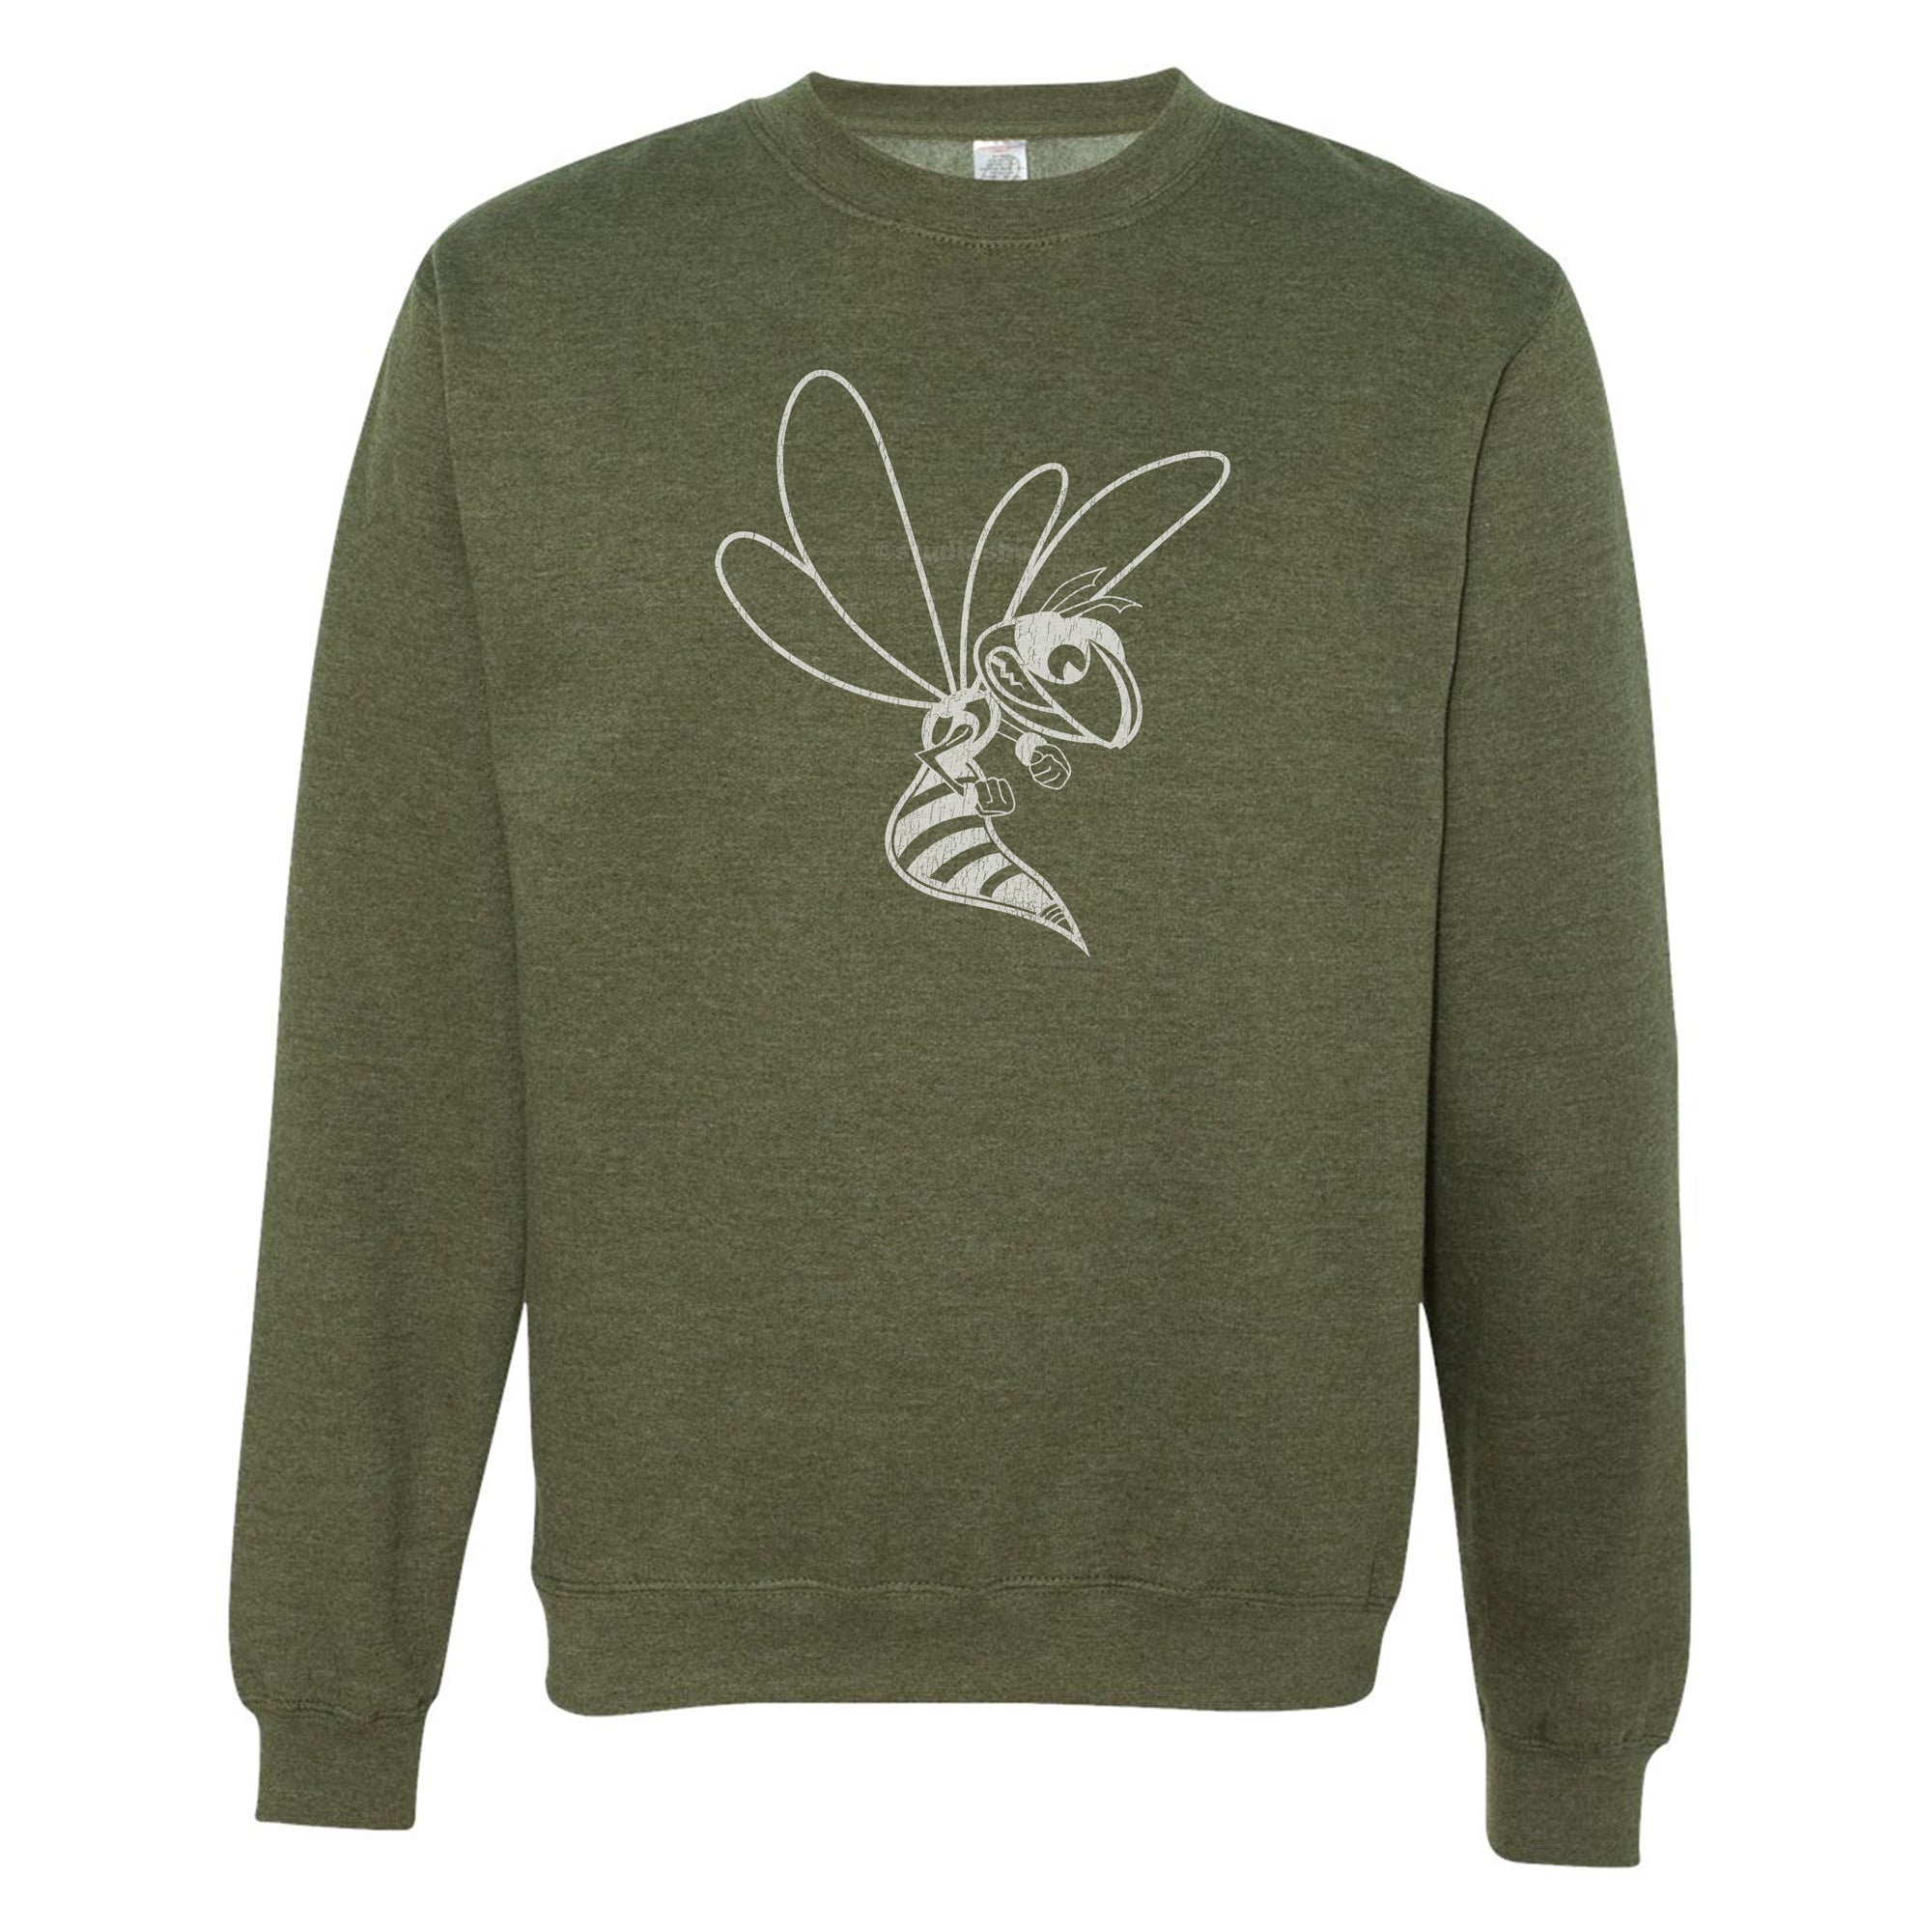 Hornet Outline - Vintage - Adult Comfy Sweatshirt